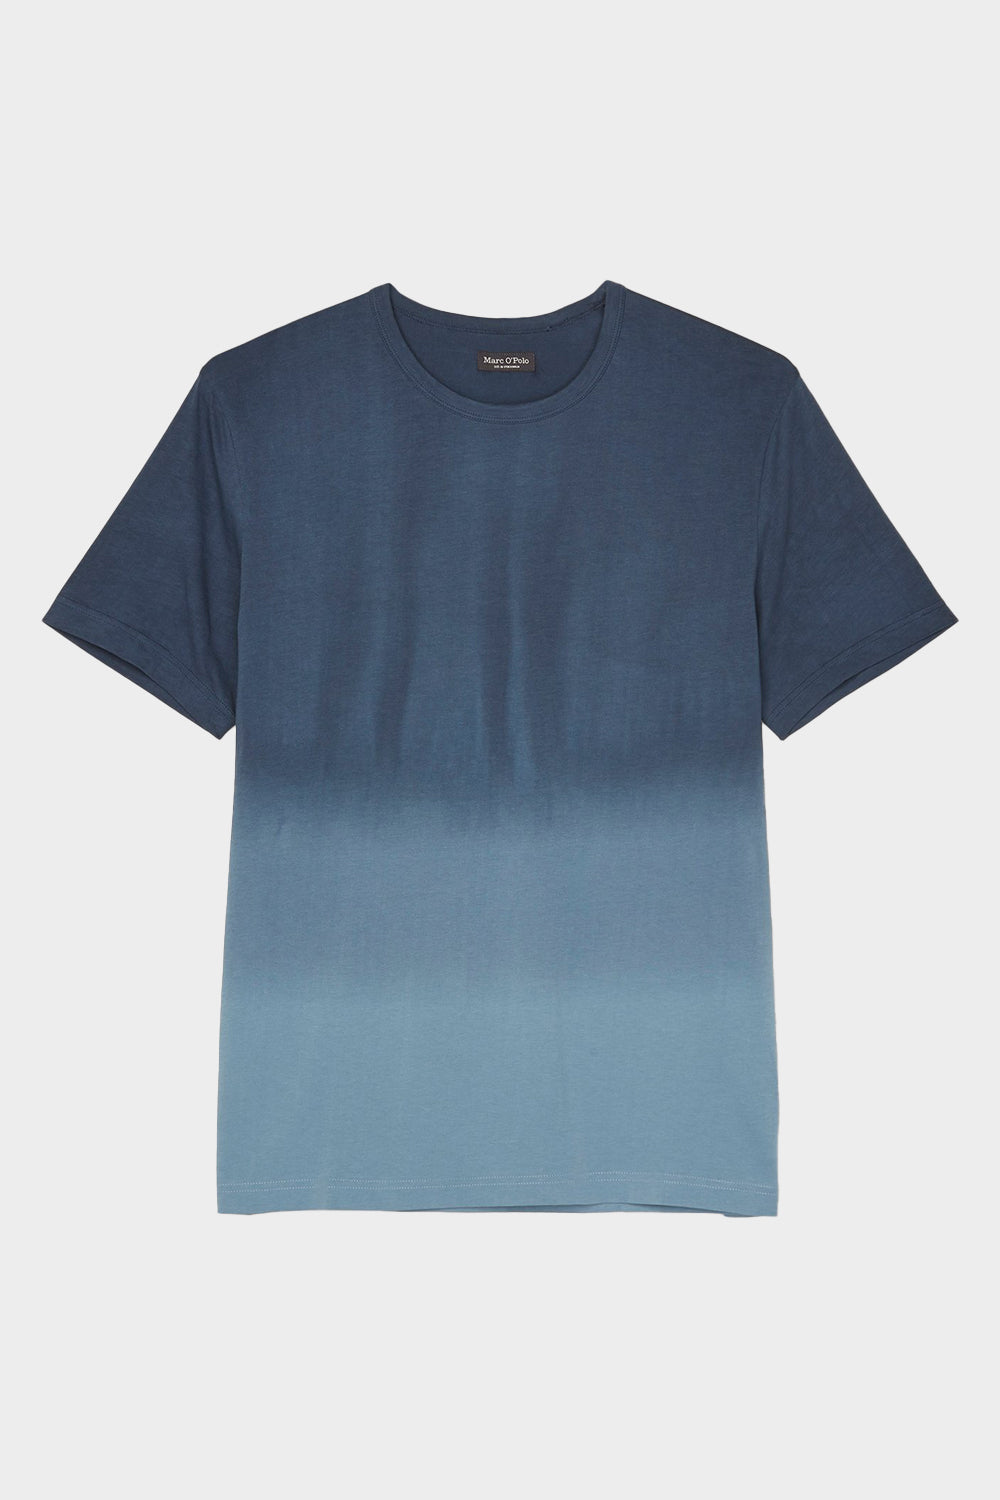 חולצה לגברים בצבע כחול MARC O POLO MARC O'POLO Vendome online | ונדום .